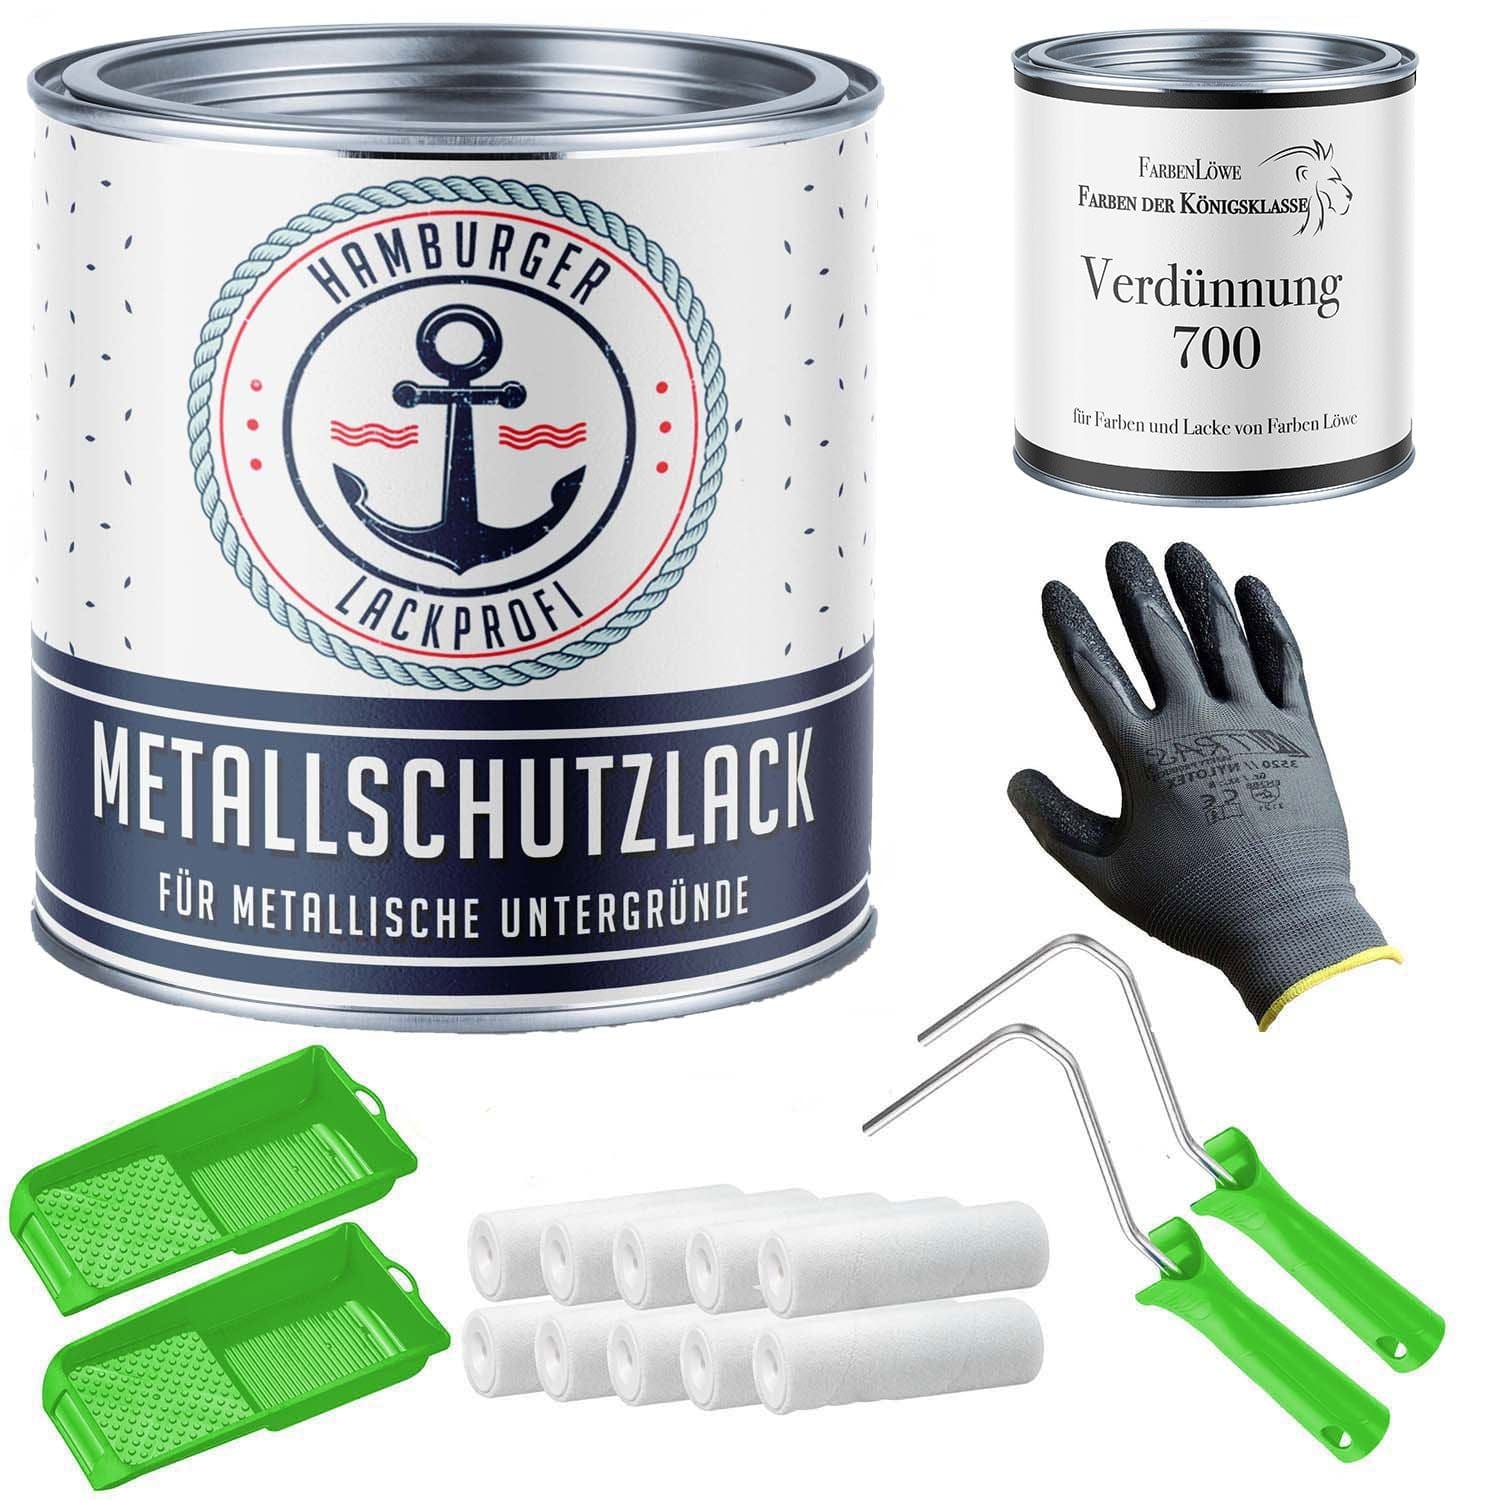 FARBENLÖWE Lacke & Beschichtungen Hamburger Lack-Profi Metallschutzlack in Himbeerrot RAL 3027 mit Lackierset (X300) & Verdünnung (1 L) - 30% Sparangebot